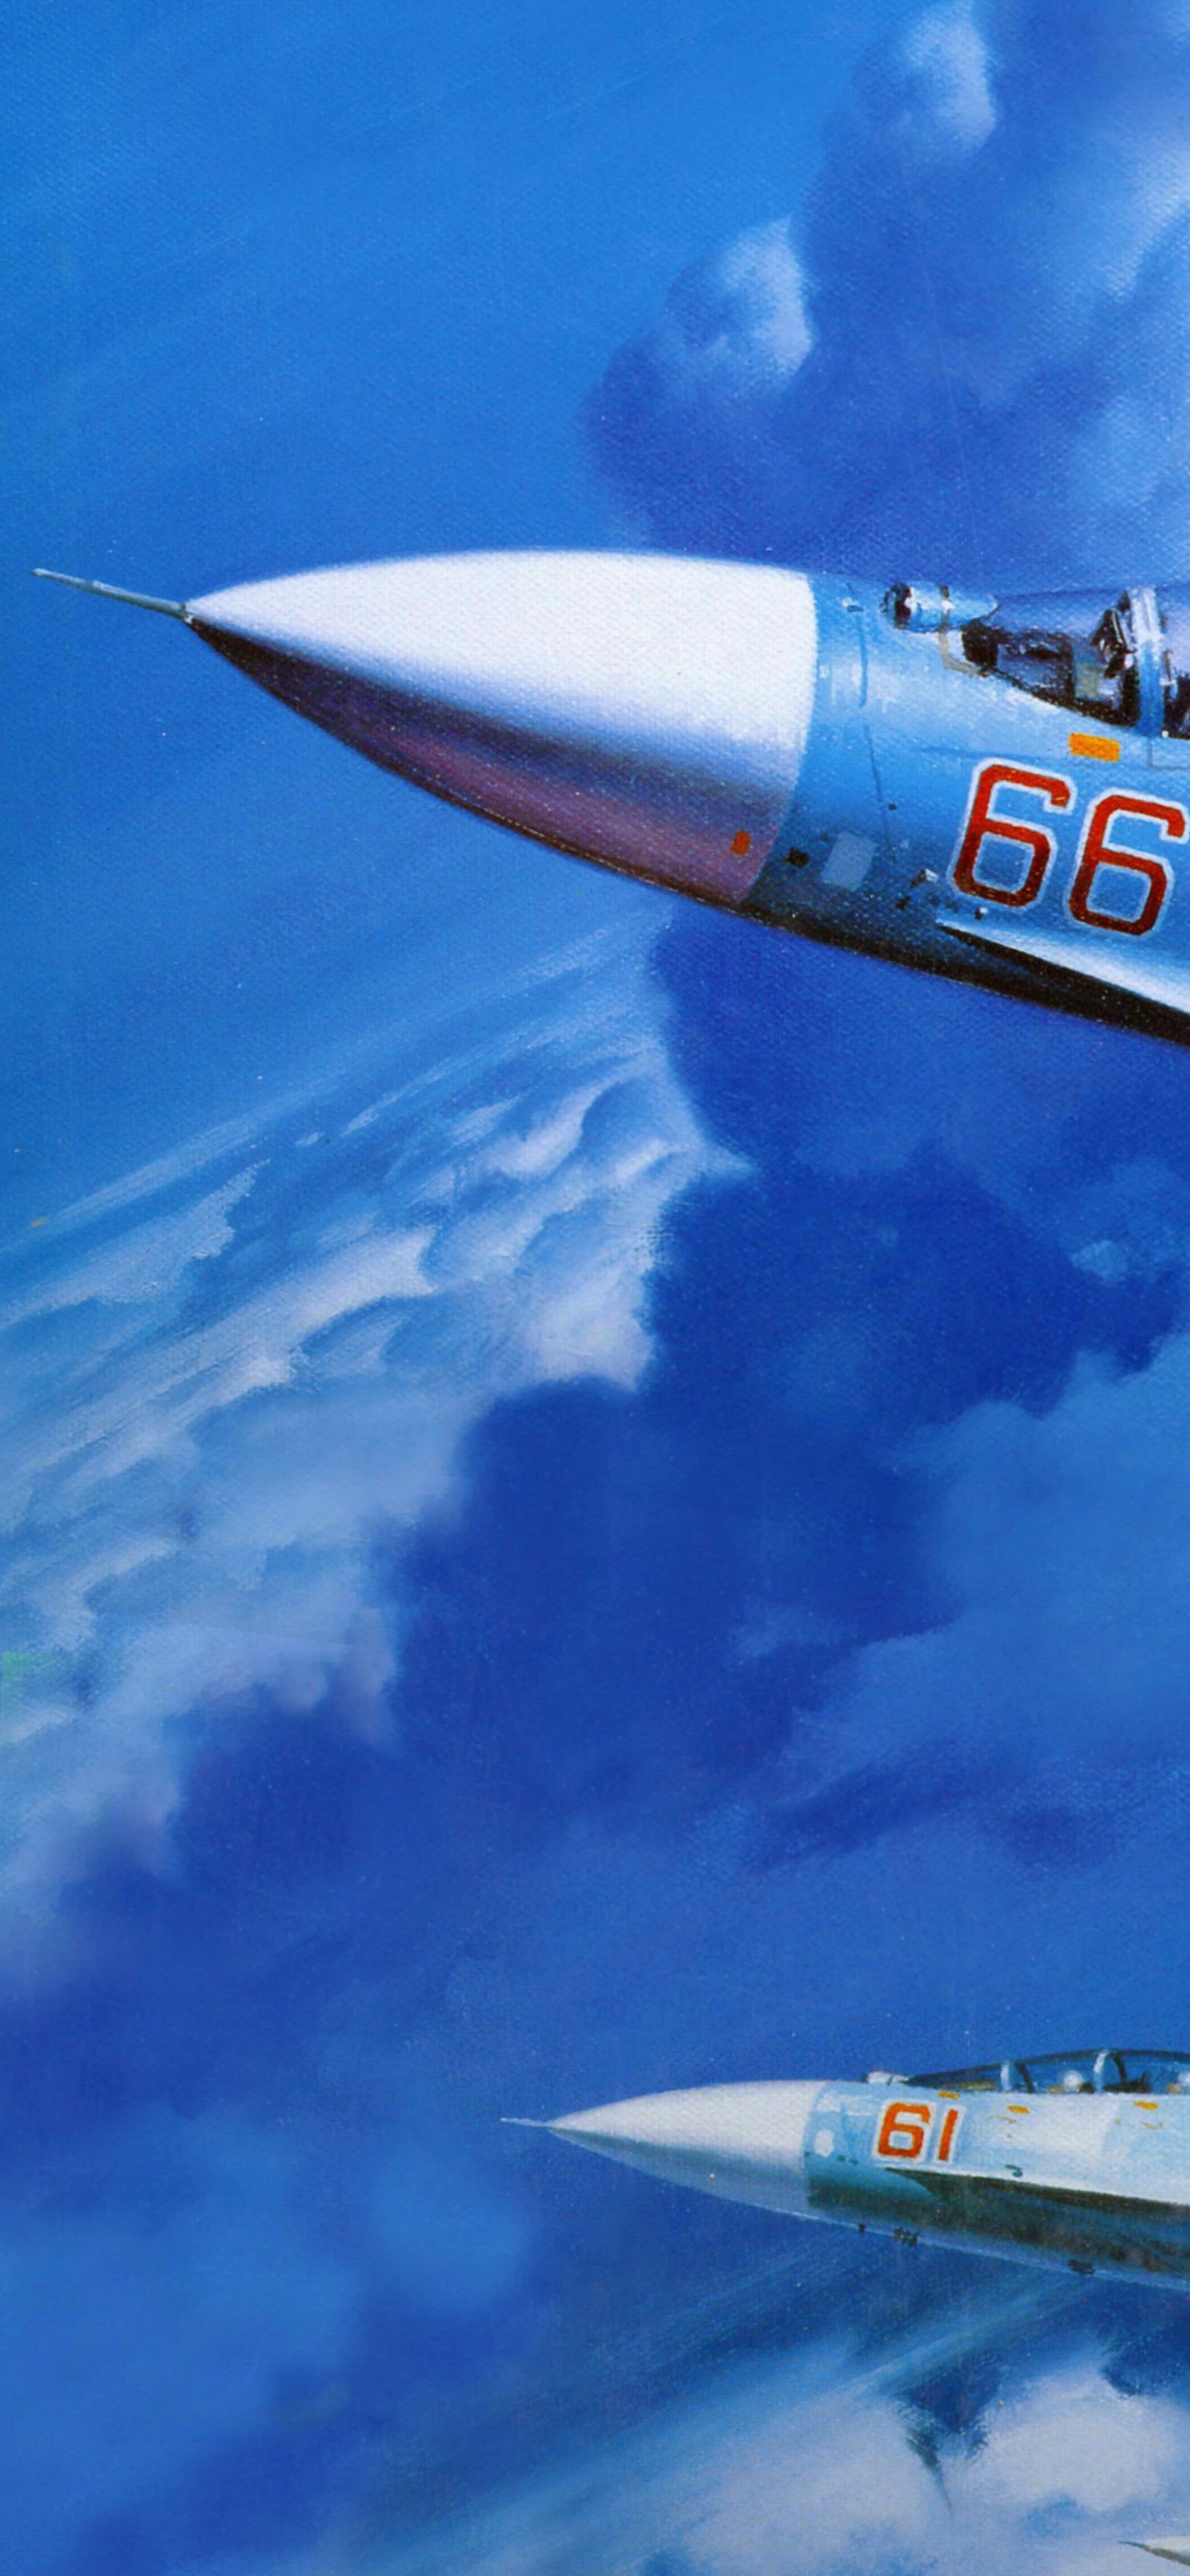 Weißes Und Blaues Düsenflugzeug Unter Blauem Himmel Tagsüber. Wallpaper in 1242x2688 Resolution